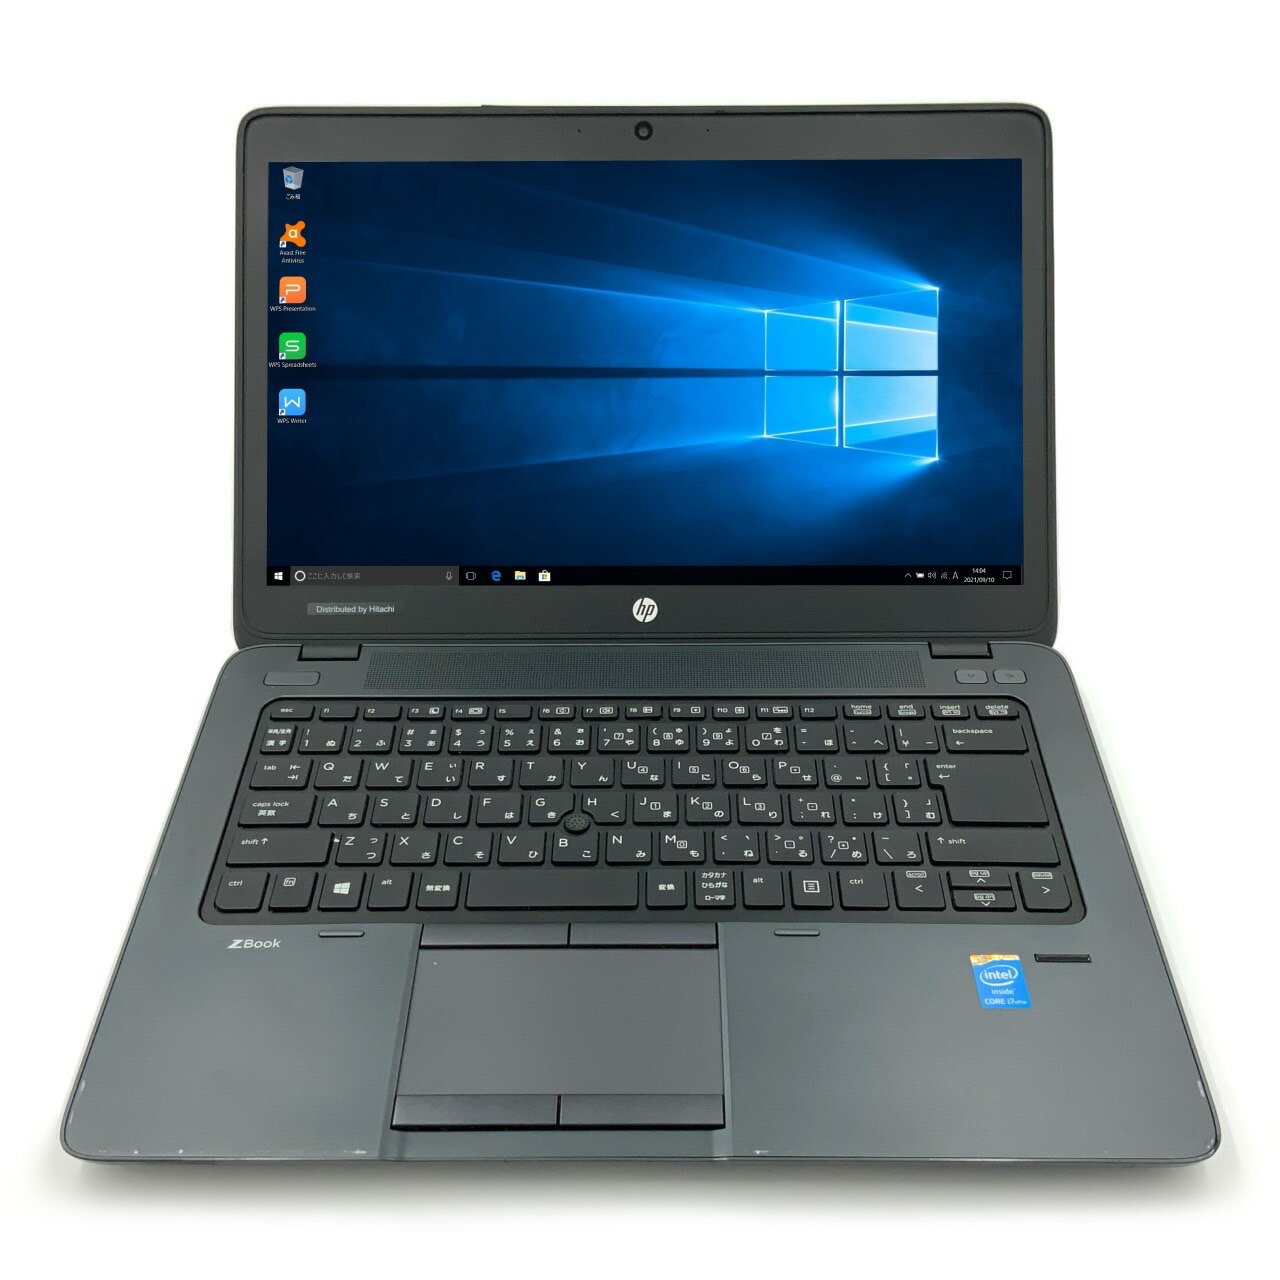 【クリエイターやヘビーユーザー向け】 【高性能ノート】 HP ZBook 14 G1 Notebook PC 第4世代 i7 4600..